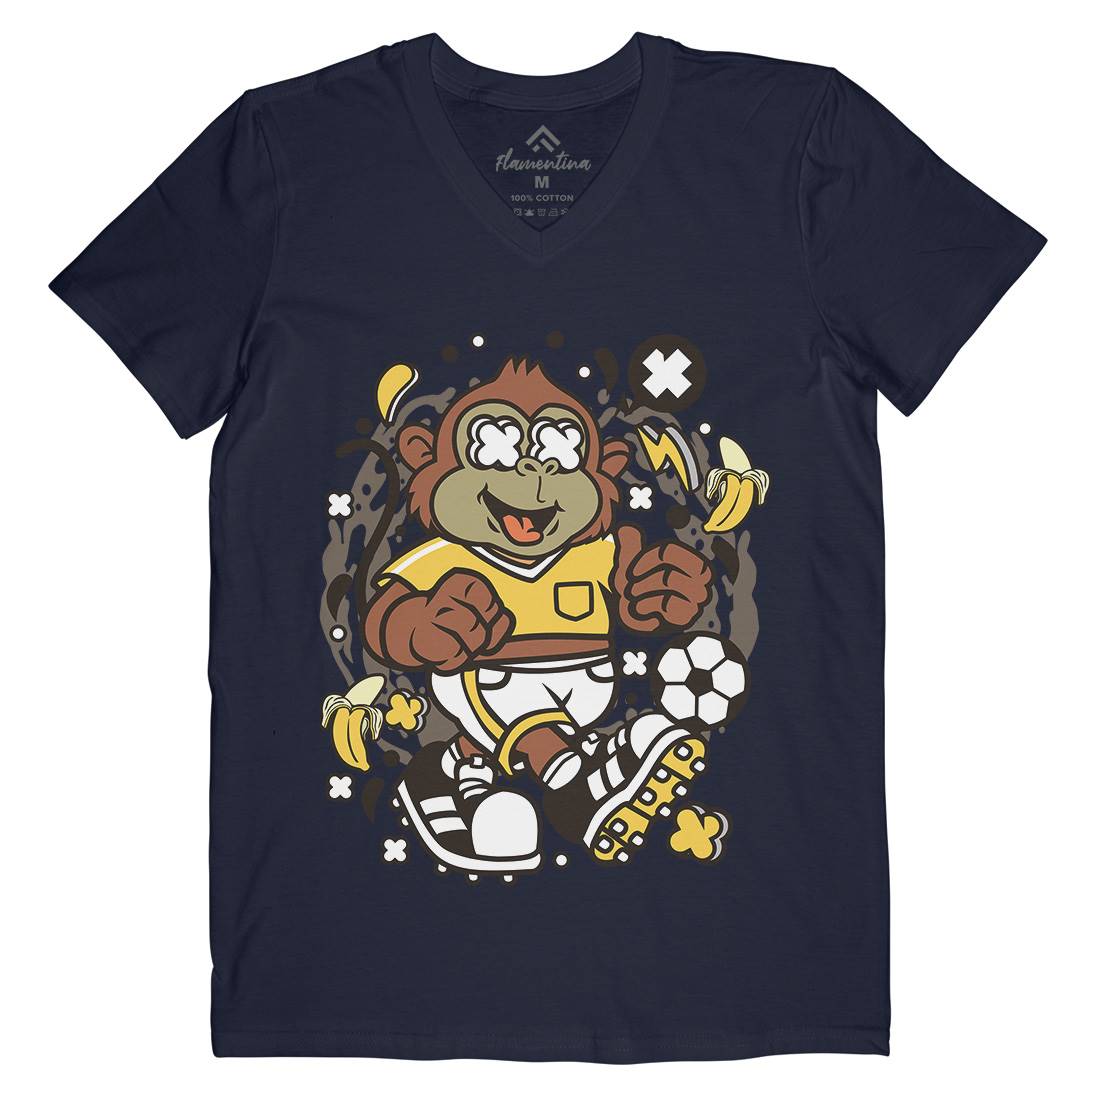 Soccer Monkey Mens V-Neck T-Shirt Sport C662